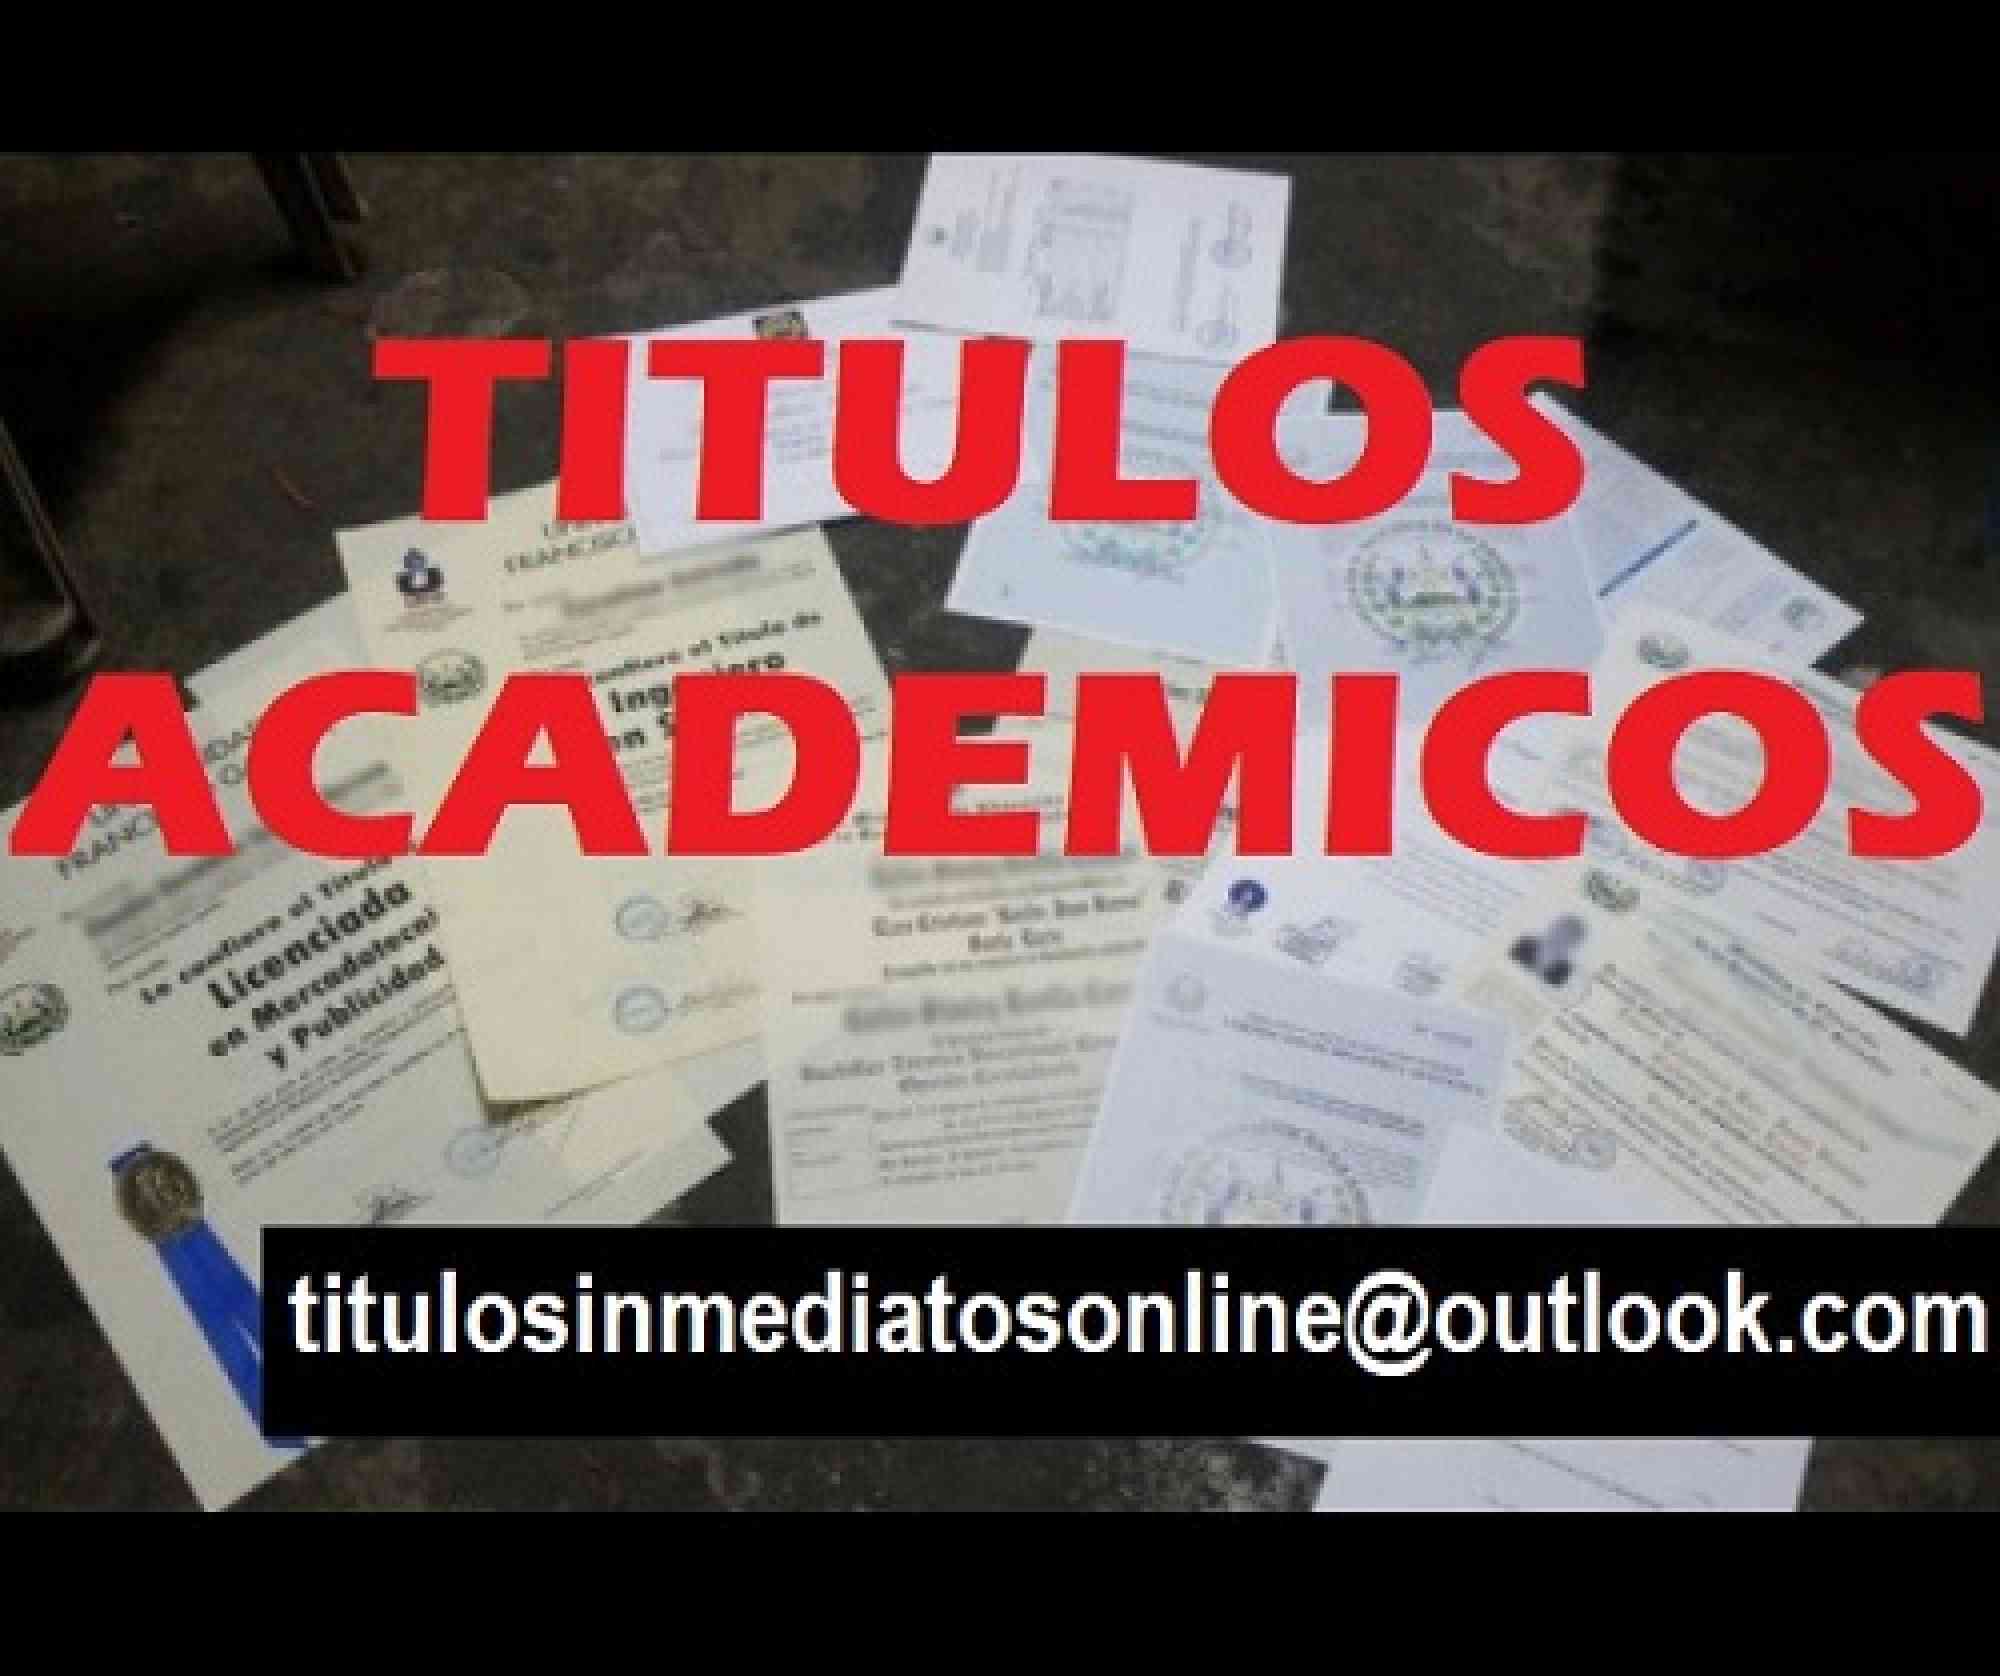 foto de Titulos academicos inmediatos